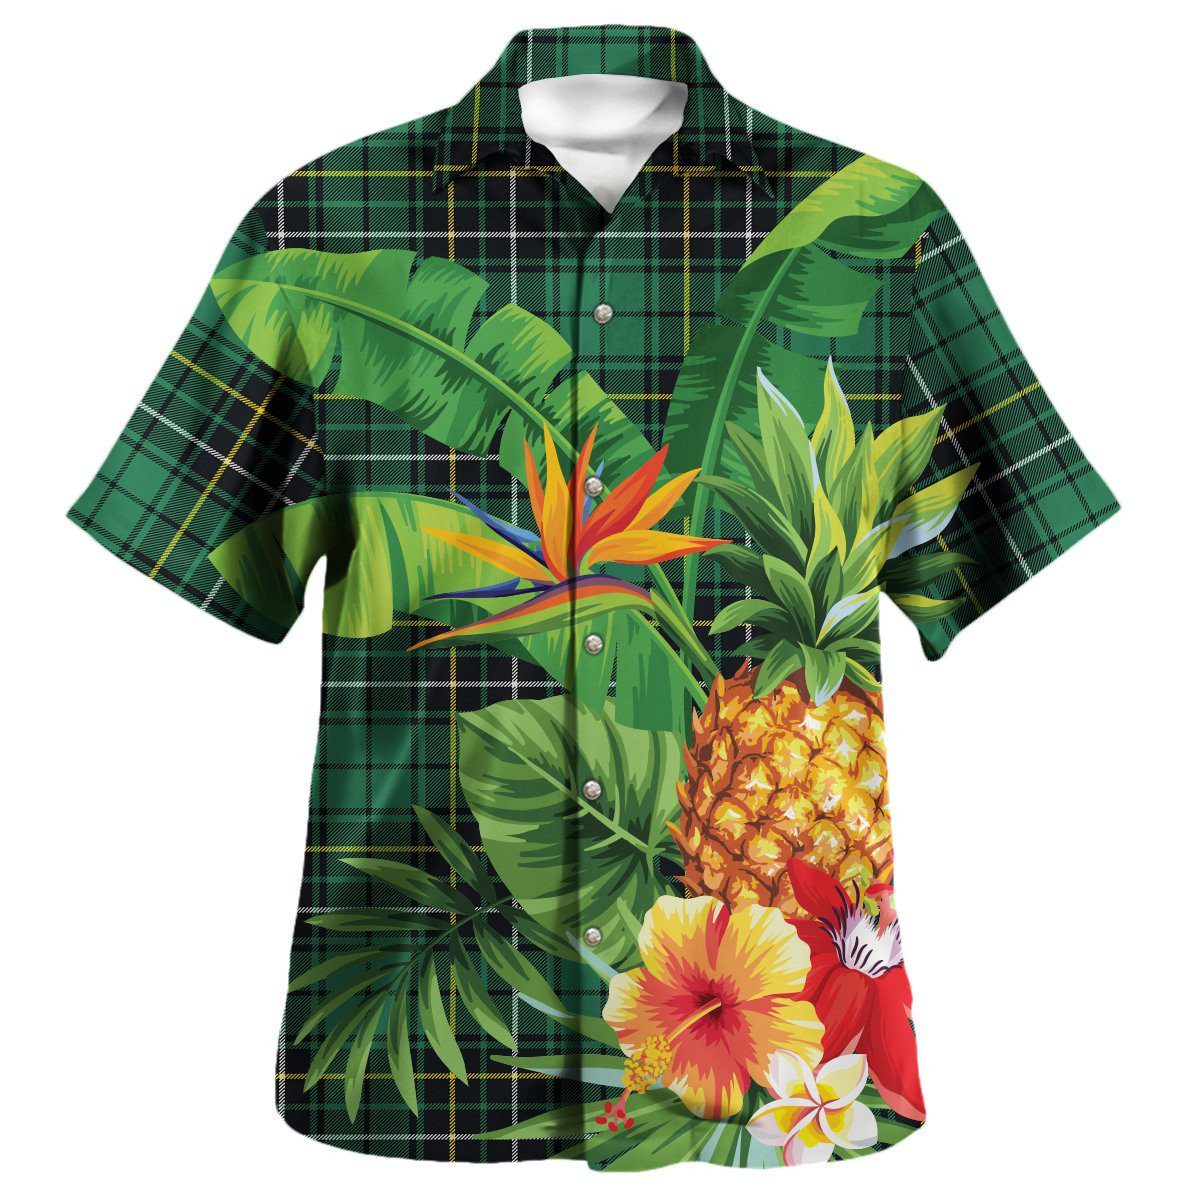 MacAlpine Ancient Tartan Aloha Shirt version 2